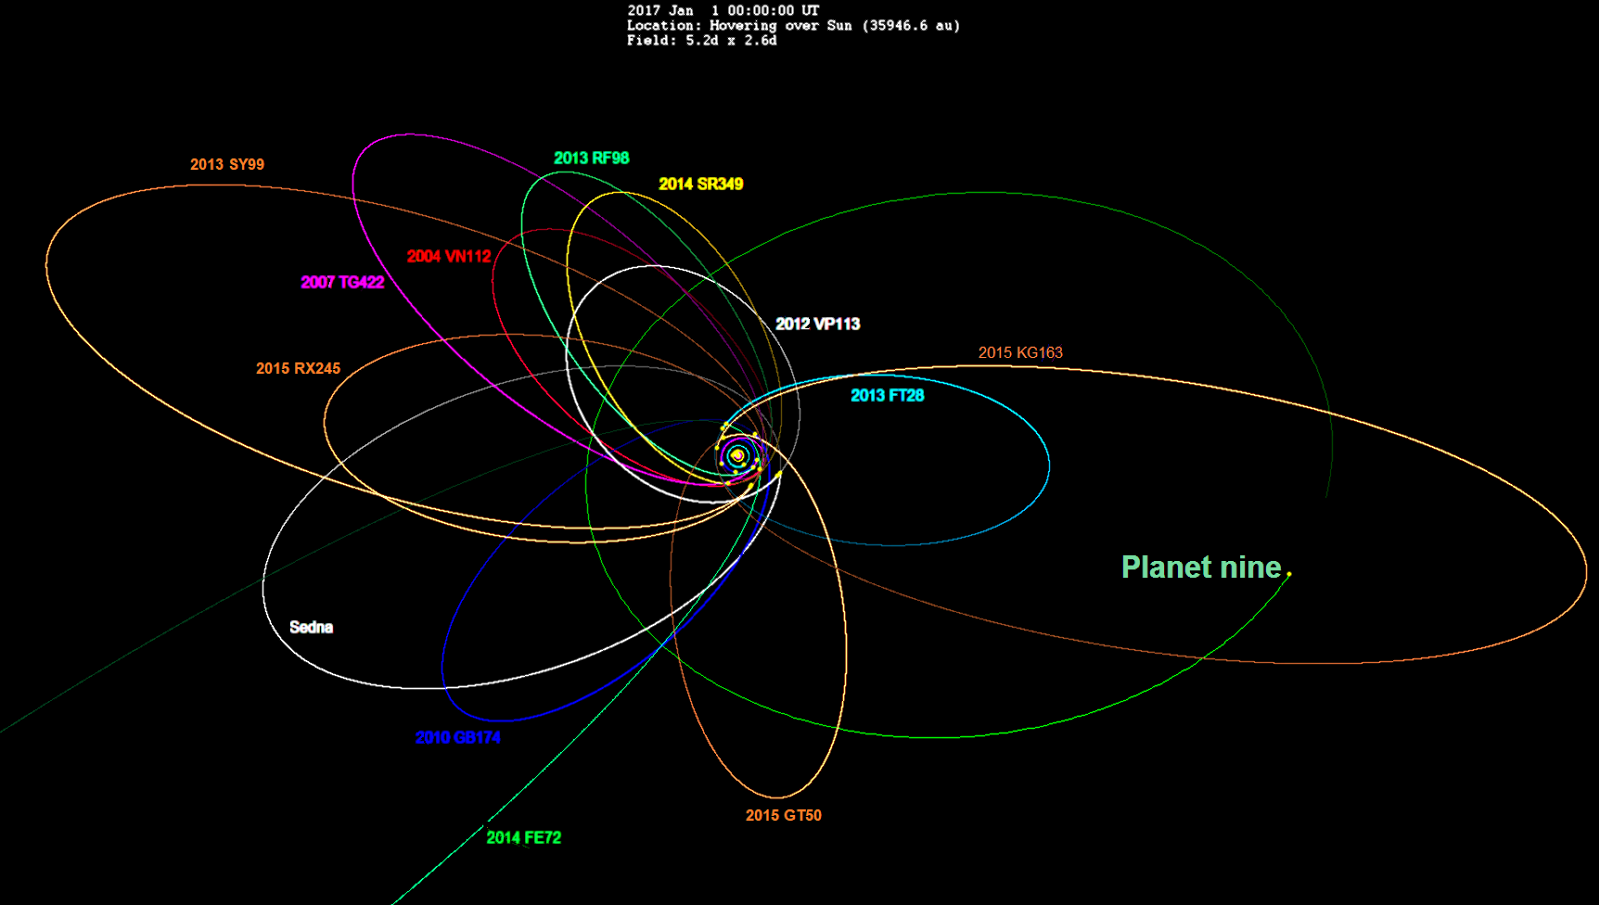 El Planeta 9, el Planeta 10 y los misterios de los confines del sistema solar - Eureka